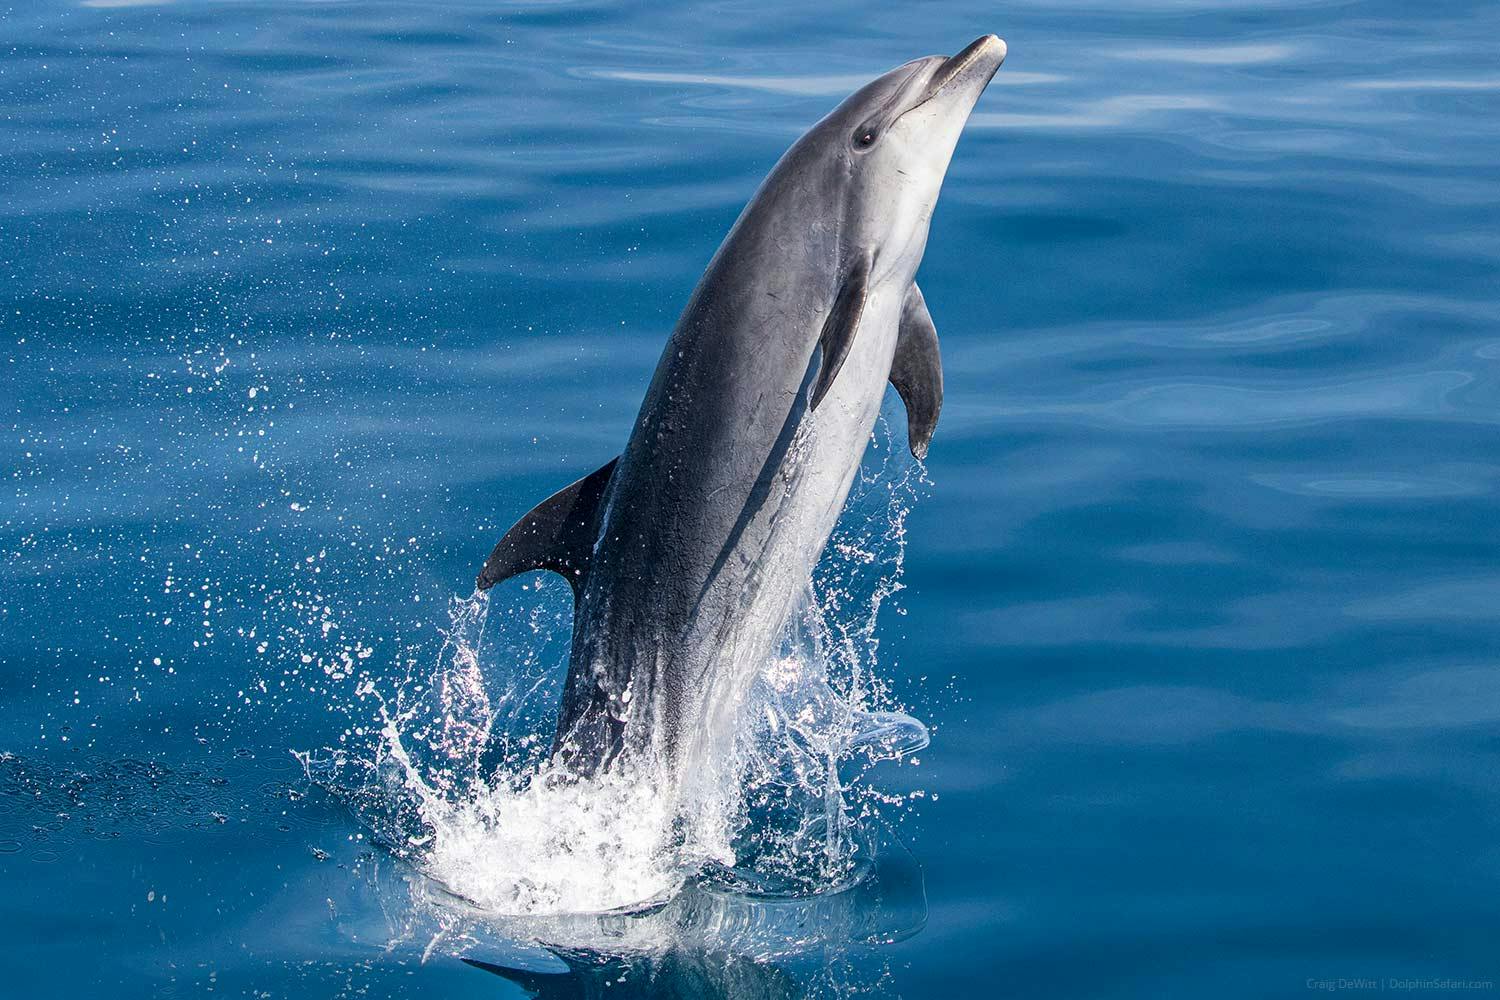  Delfin butlonose wyskakuje ze szklistych mórz